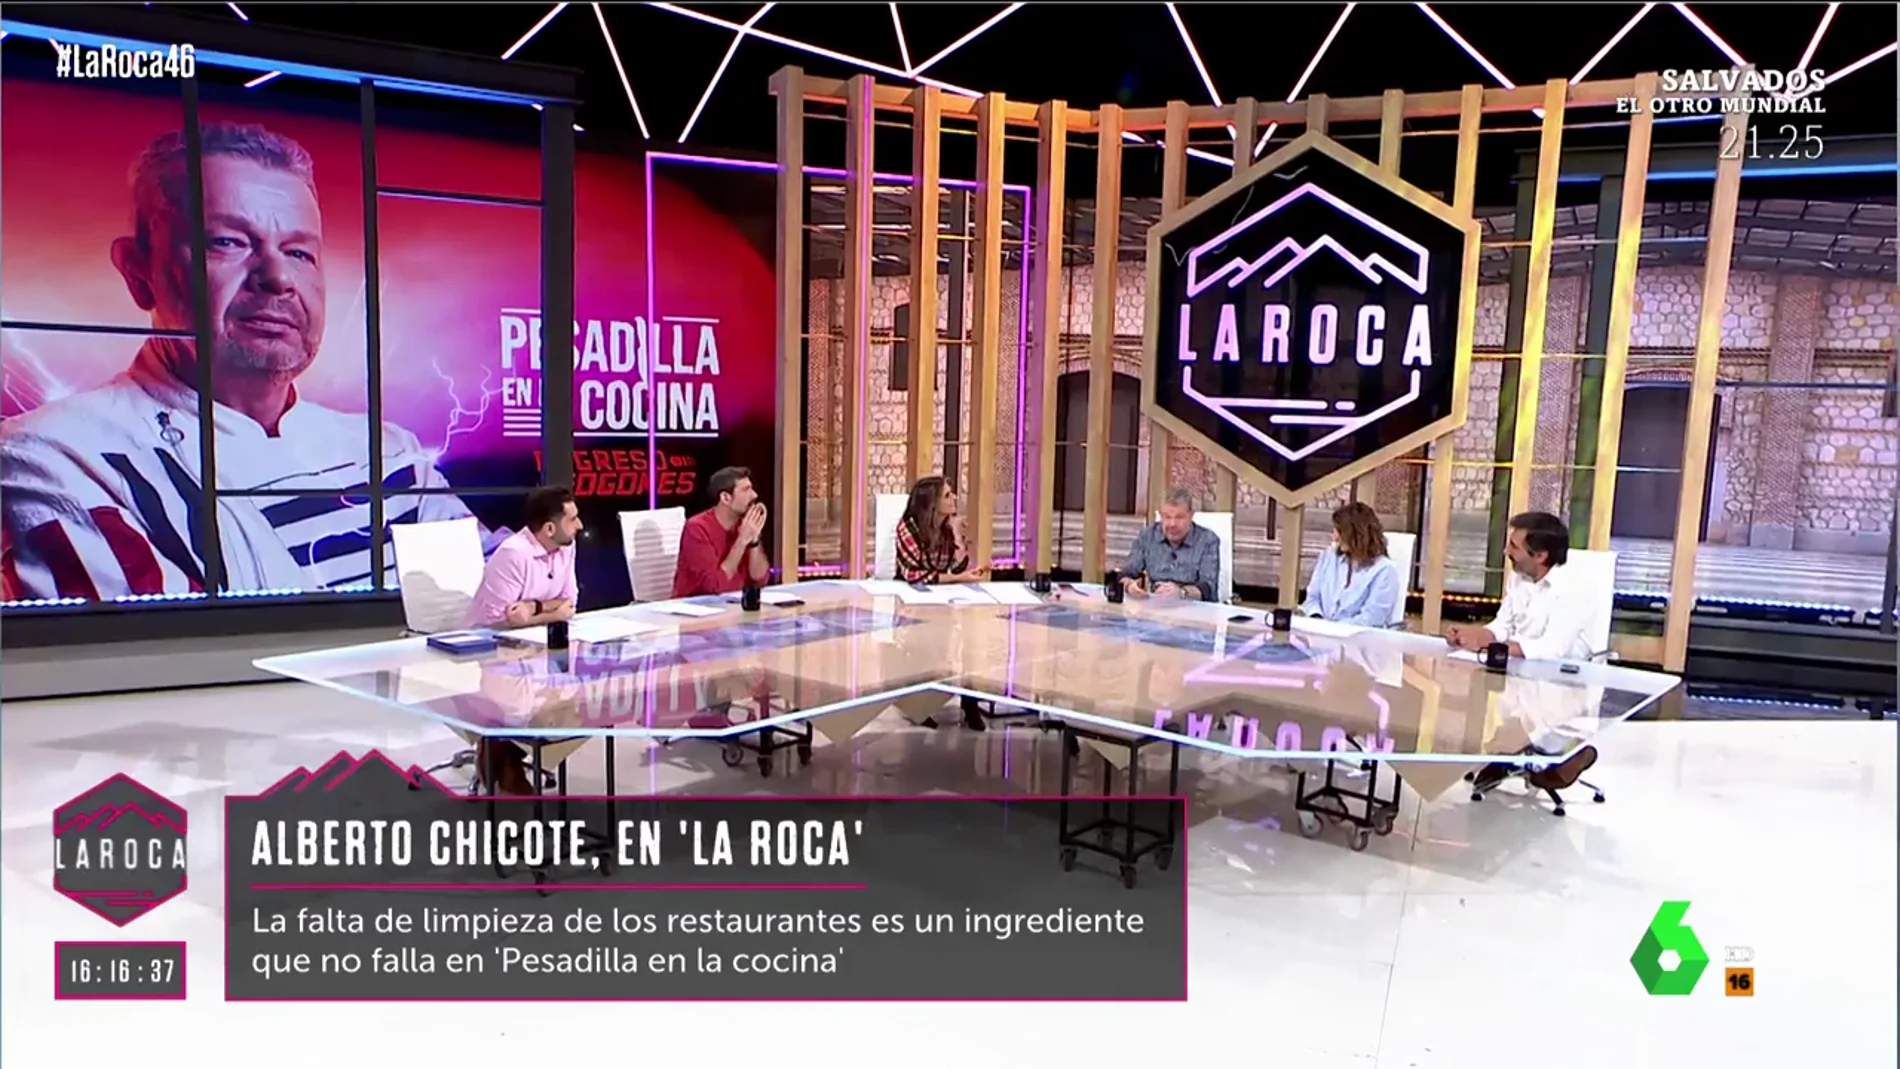 Alberto Chicote: "Hay gente que abre un restaurante solo porque hace una tortilla cojonuda"